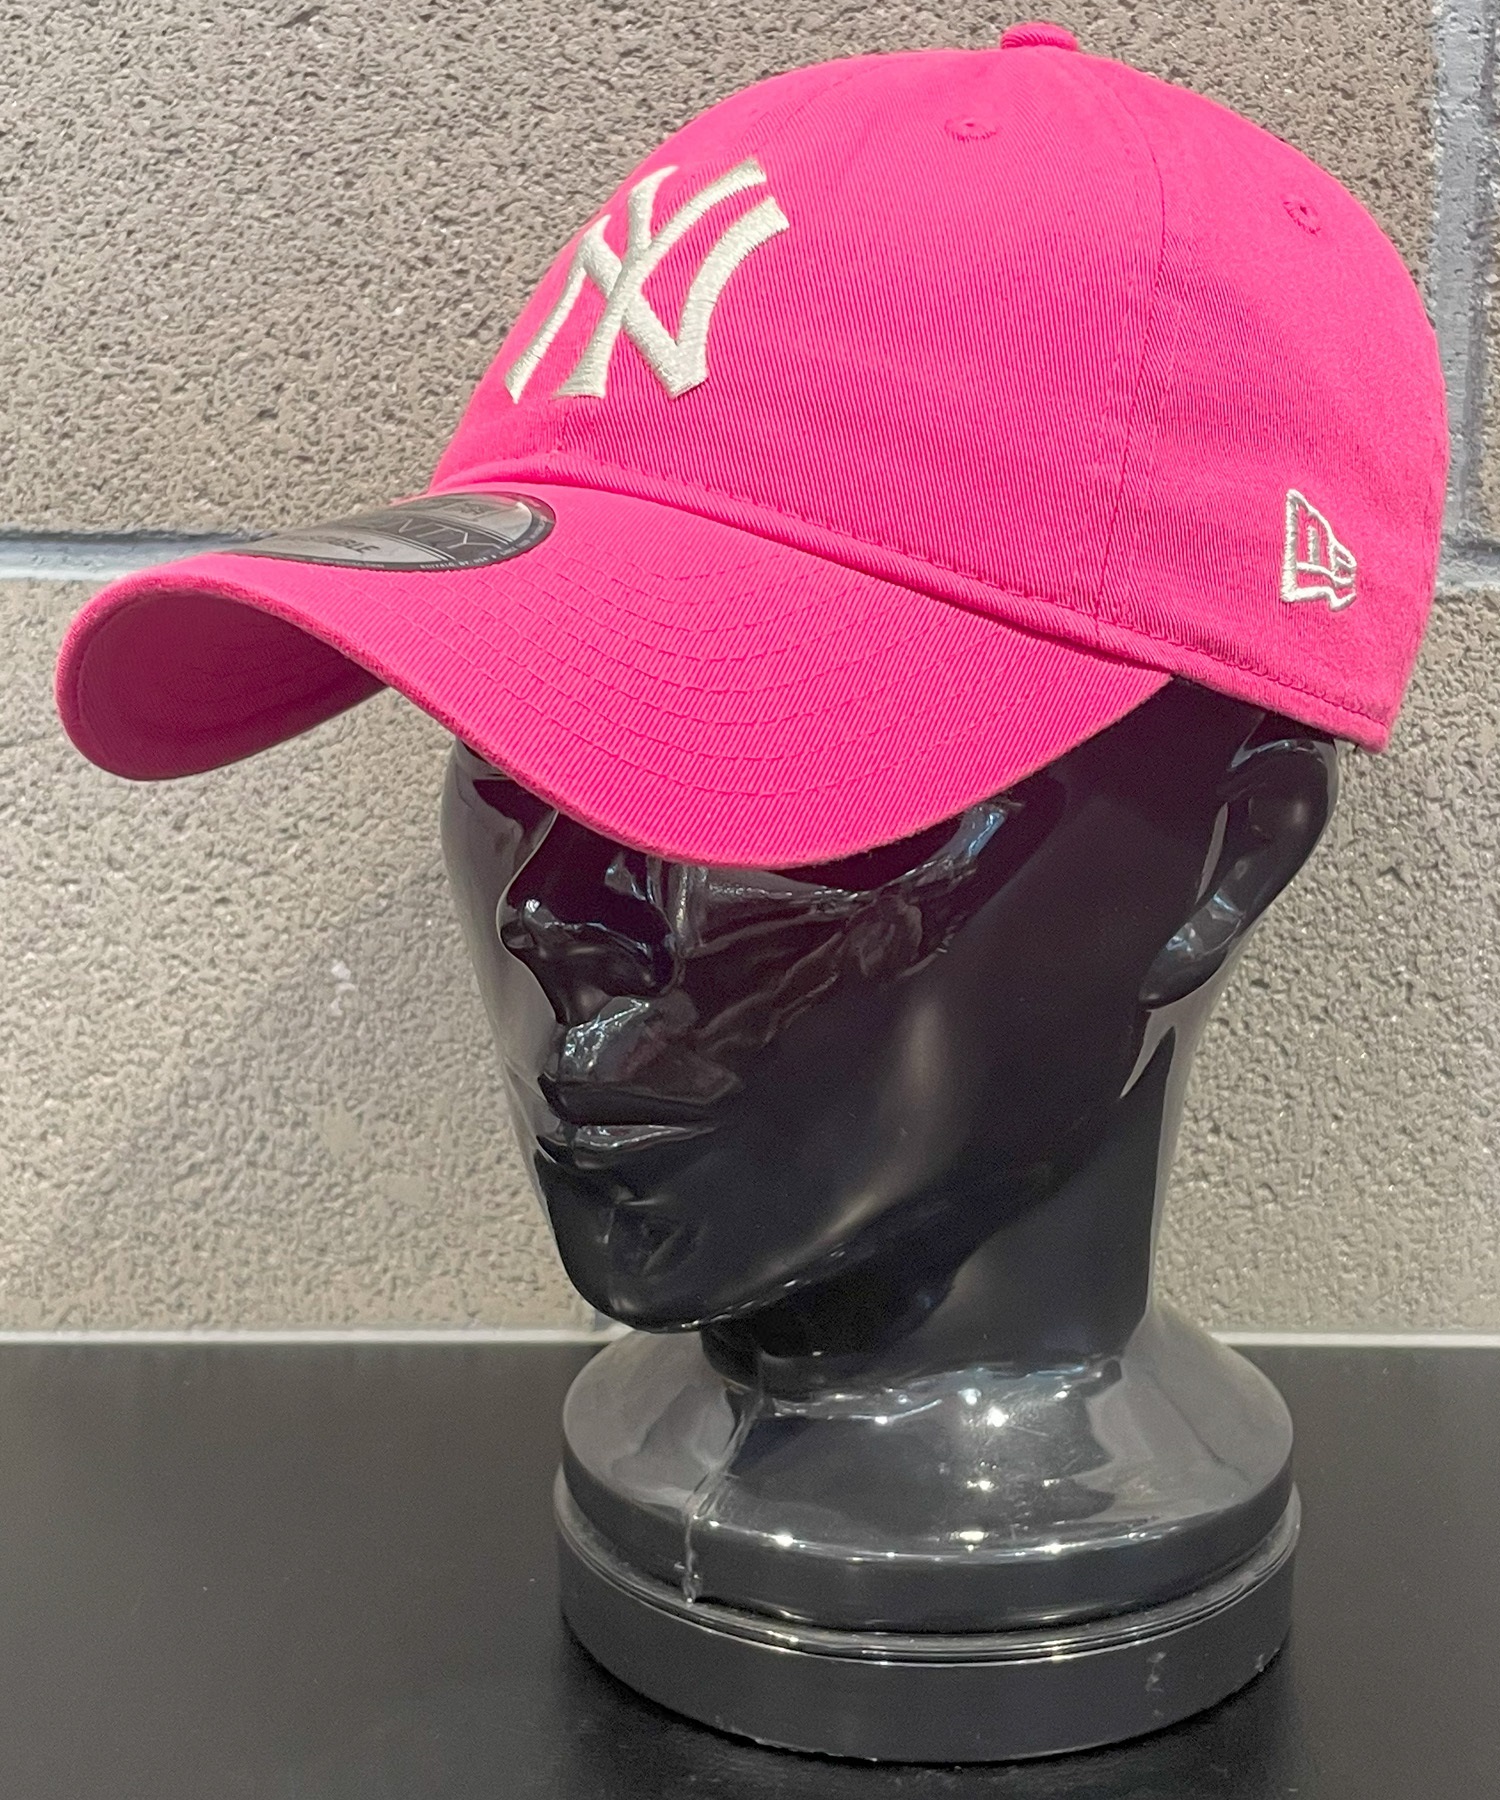 NEW ERA/ニューエラ 9TWENTY ニューヨーク・ヤンキース ピンク×シルバー キャップ 帽子 14324557 ムラサキスポーツ限定(BPUR-FREE)